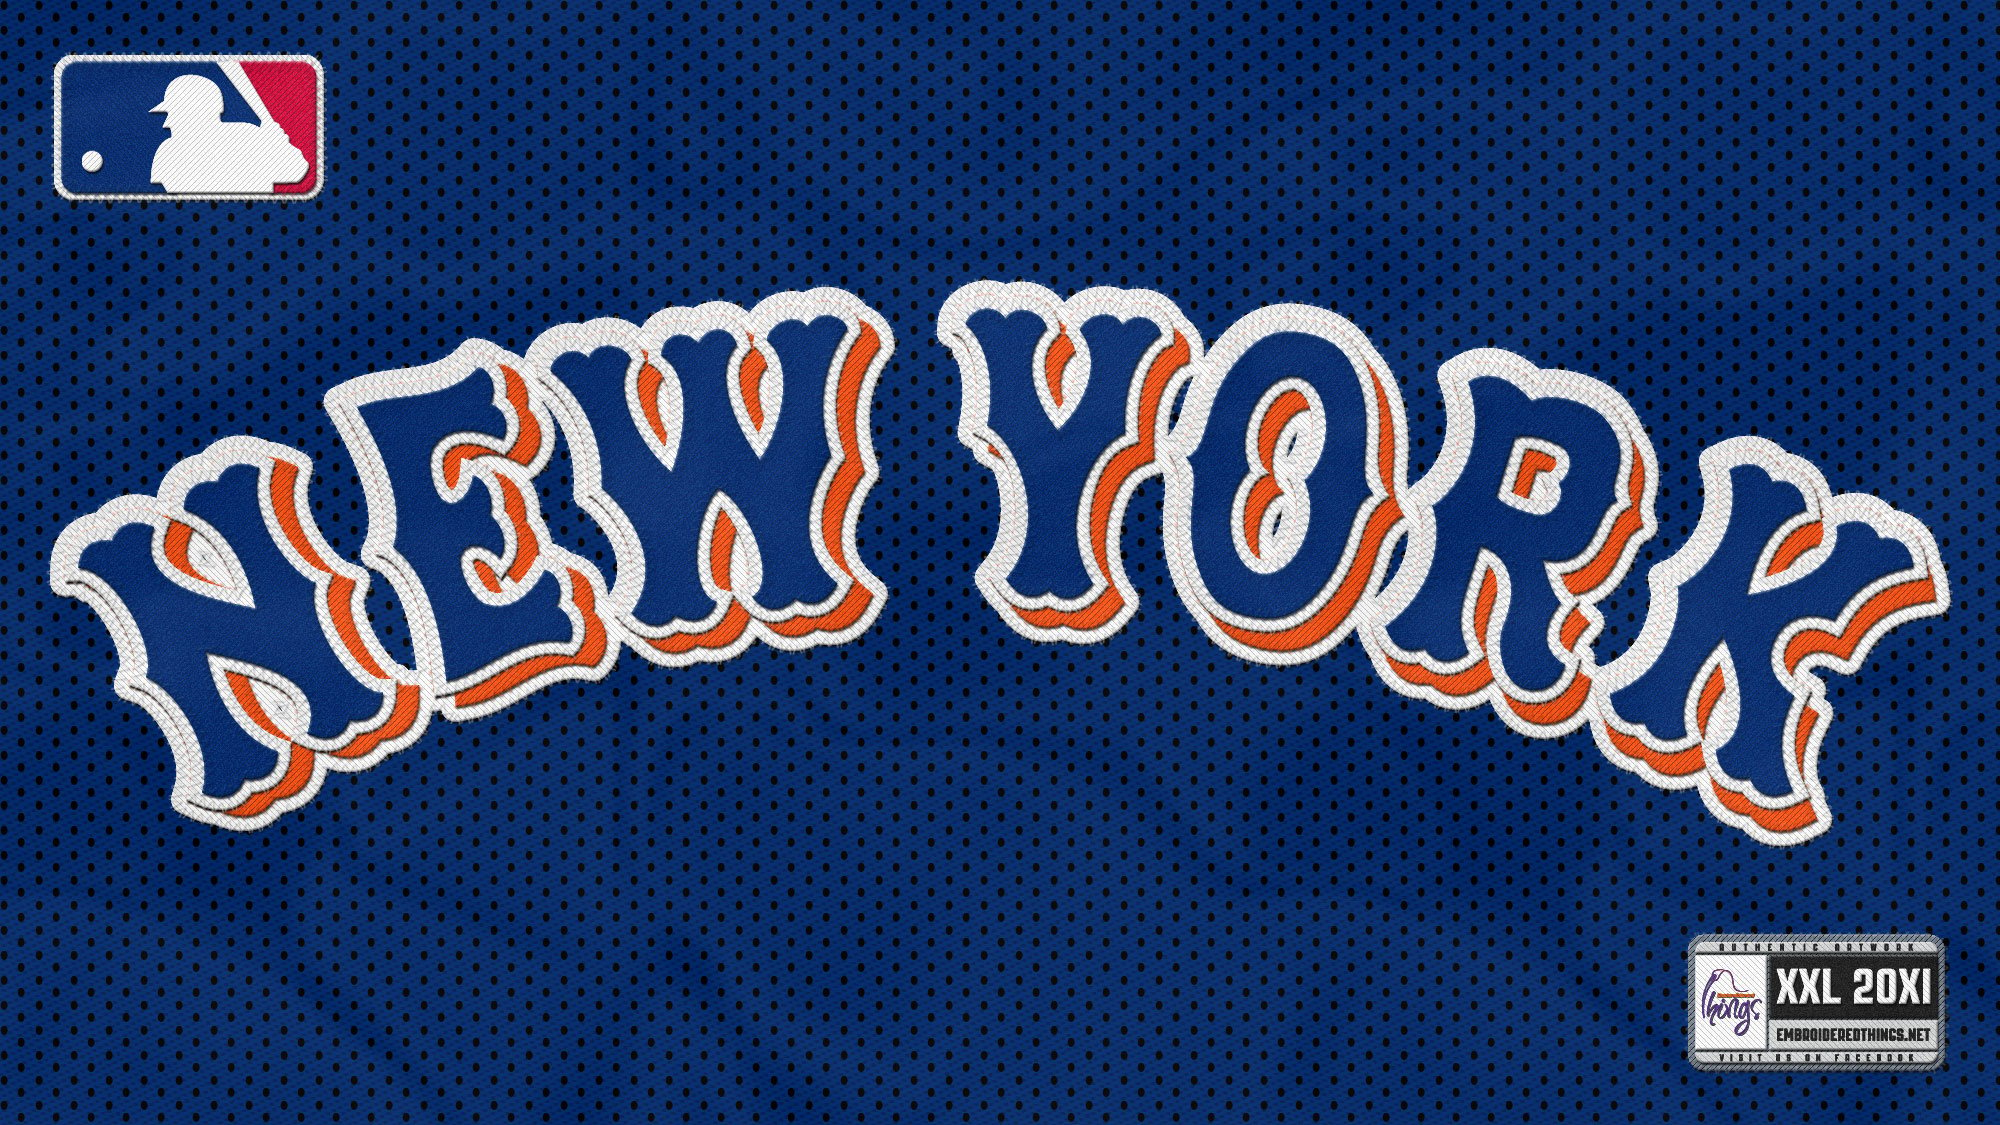 Fondos de pantalla de New York Mets Wallpapers de New York Mets 2000x1125